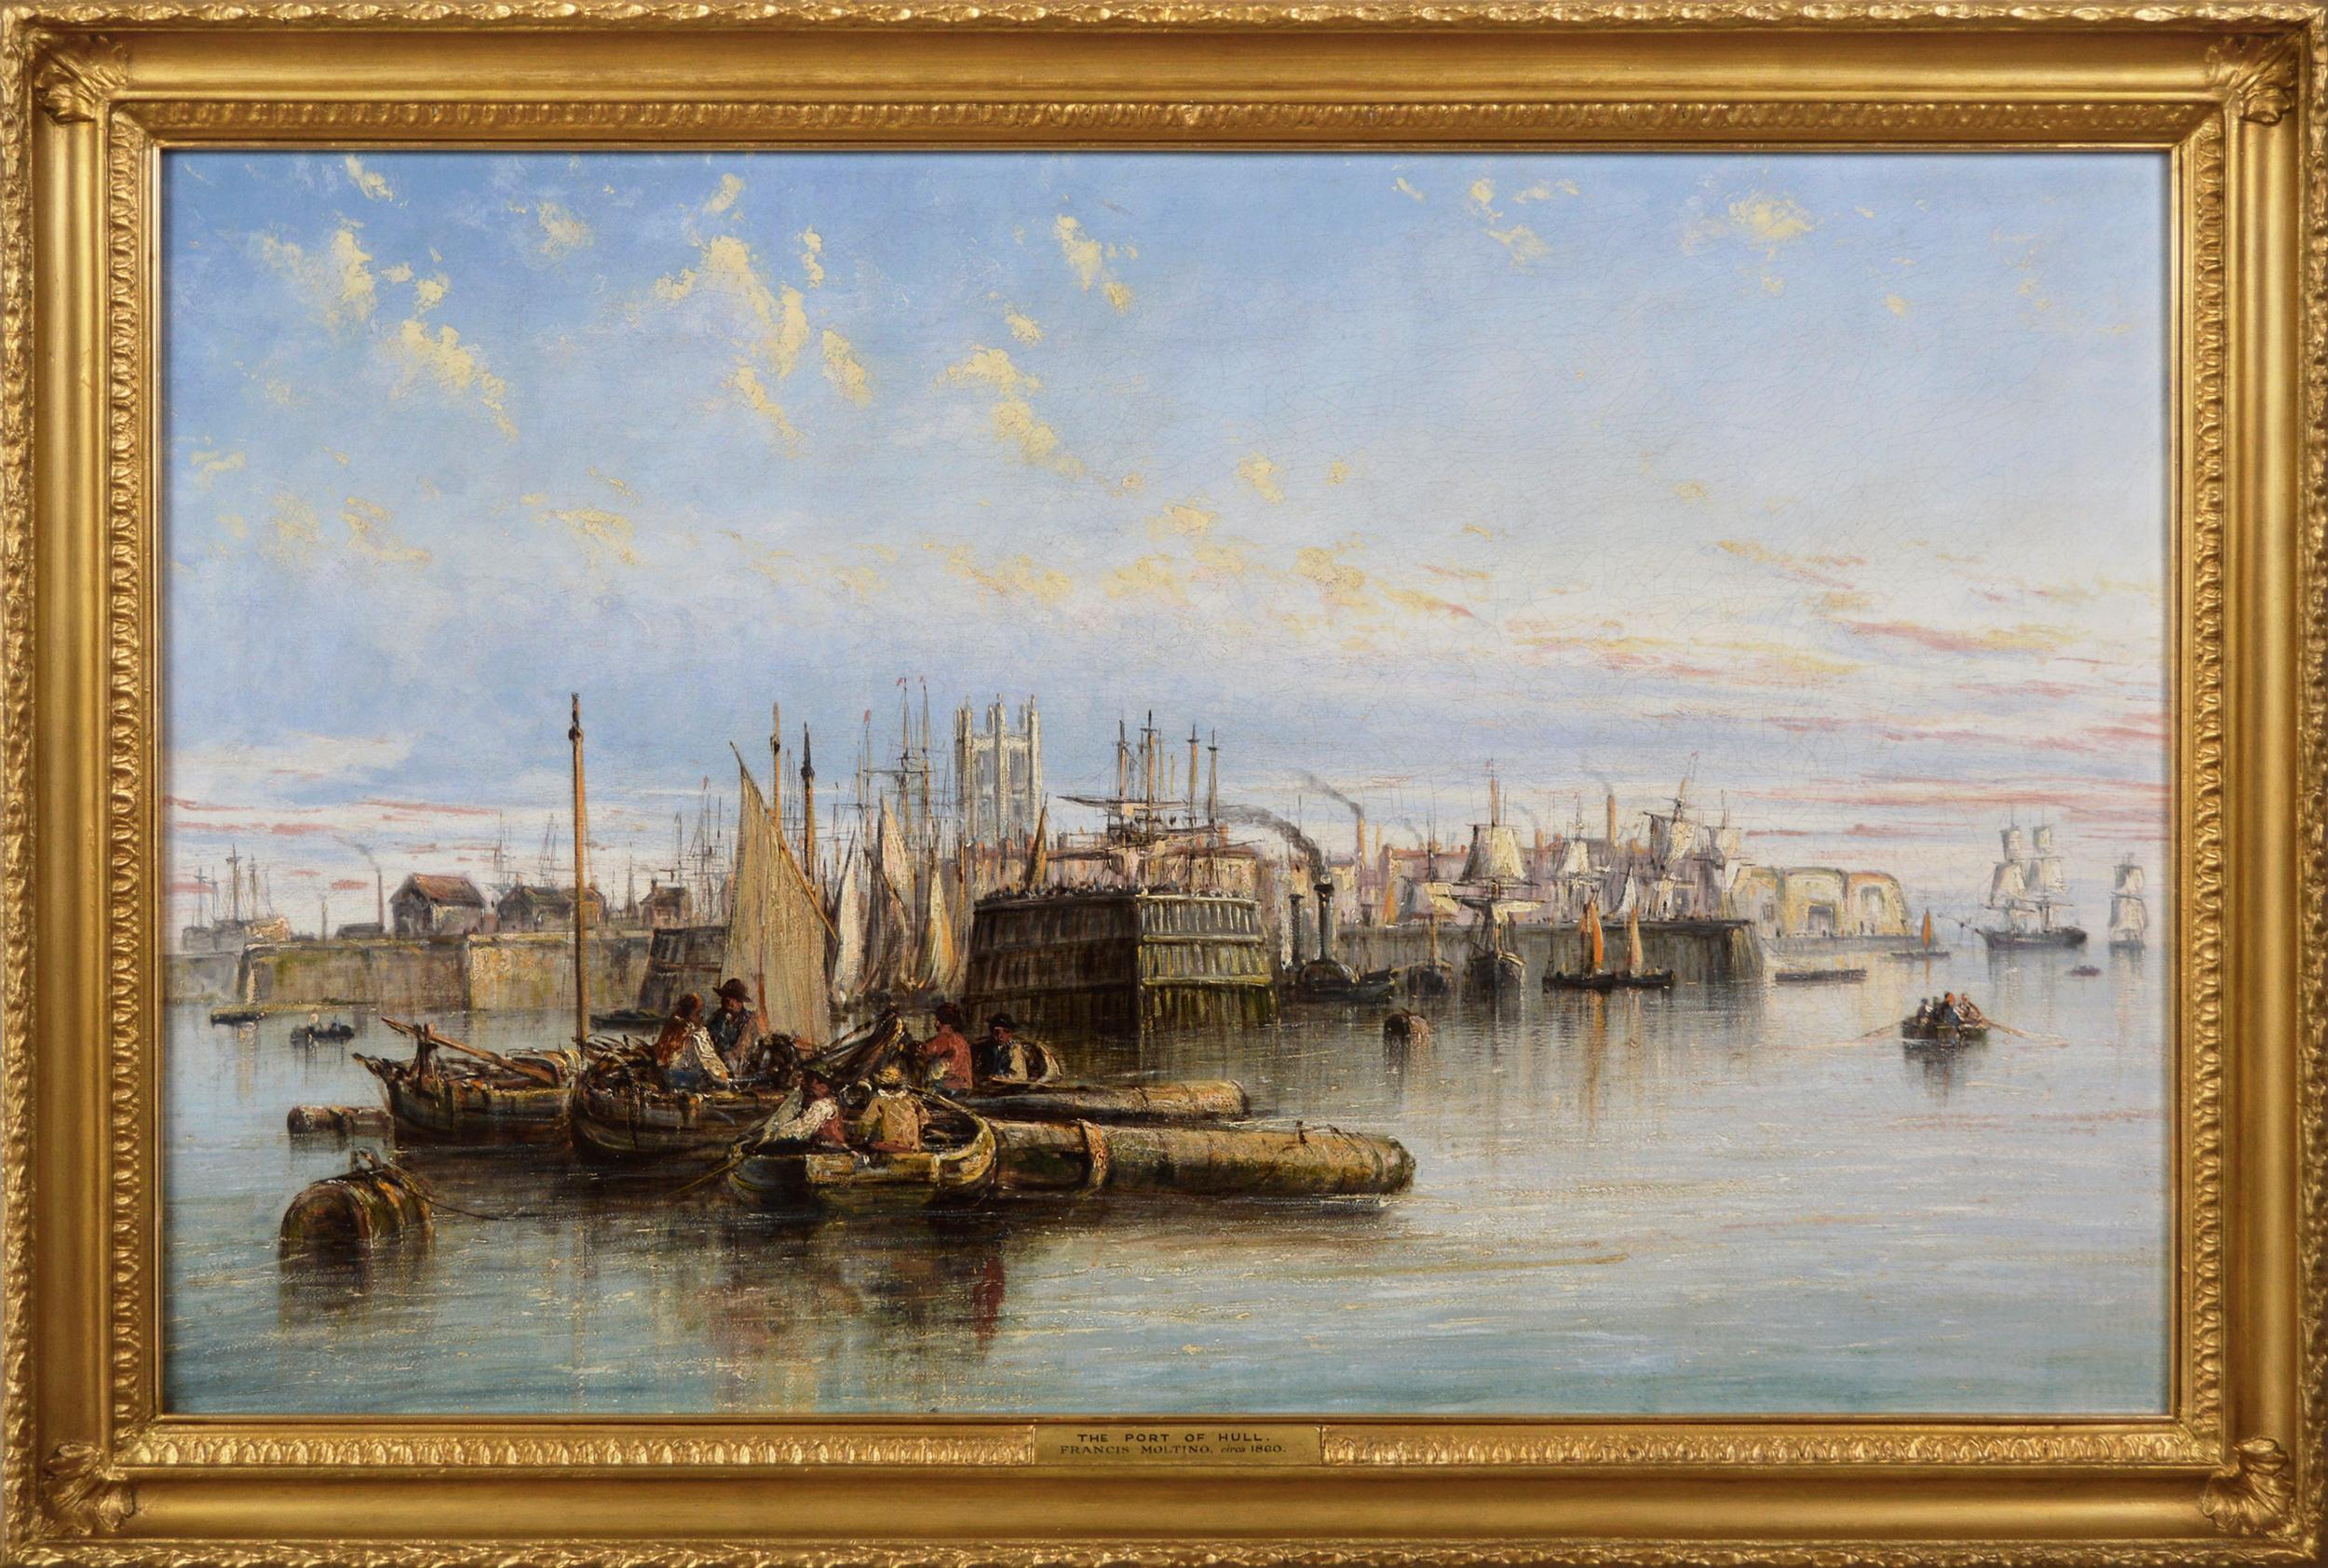 Landscape Painting Francis Moltino - Peinture à l'huile du 19e siècle représentant des navires et des bateaux dans le port de Hull